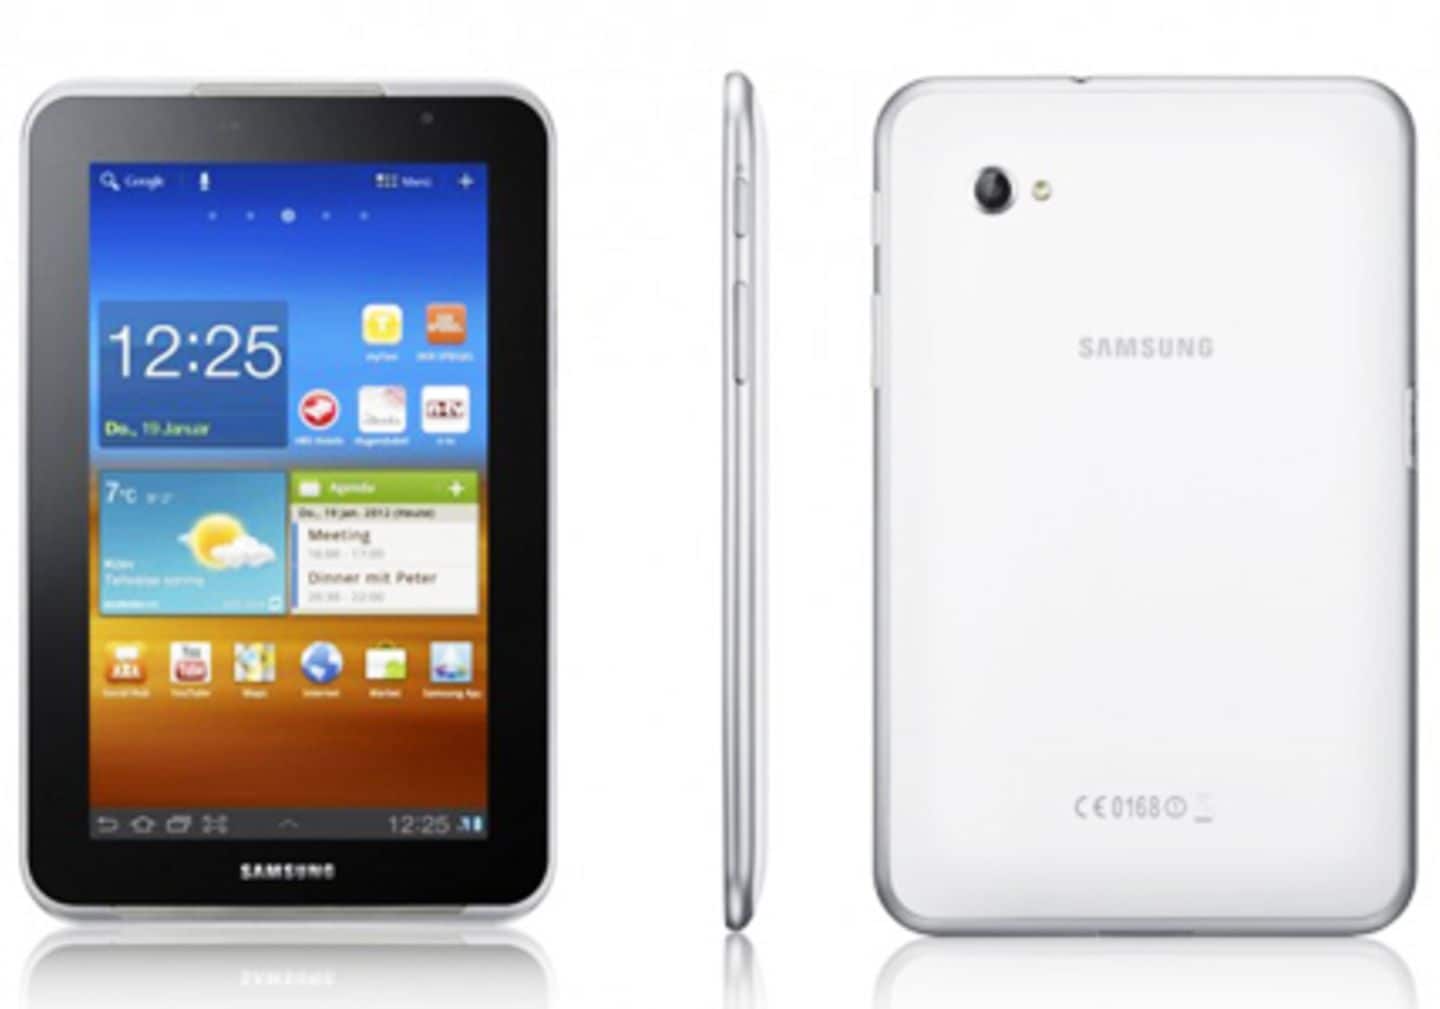 Samsung Galaxy Tab 10.1 N